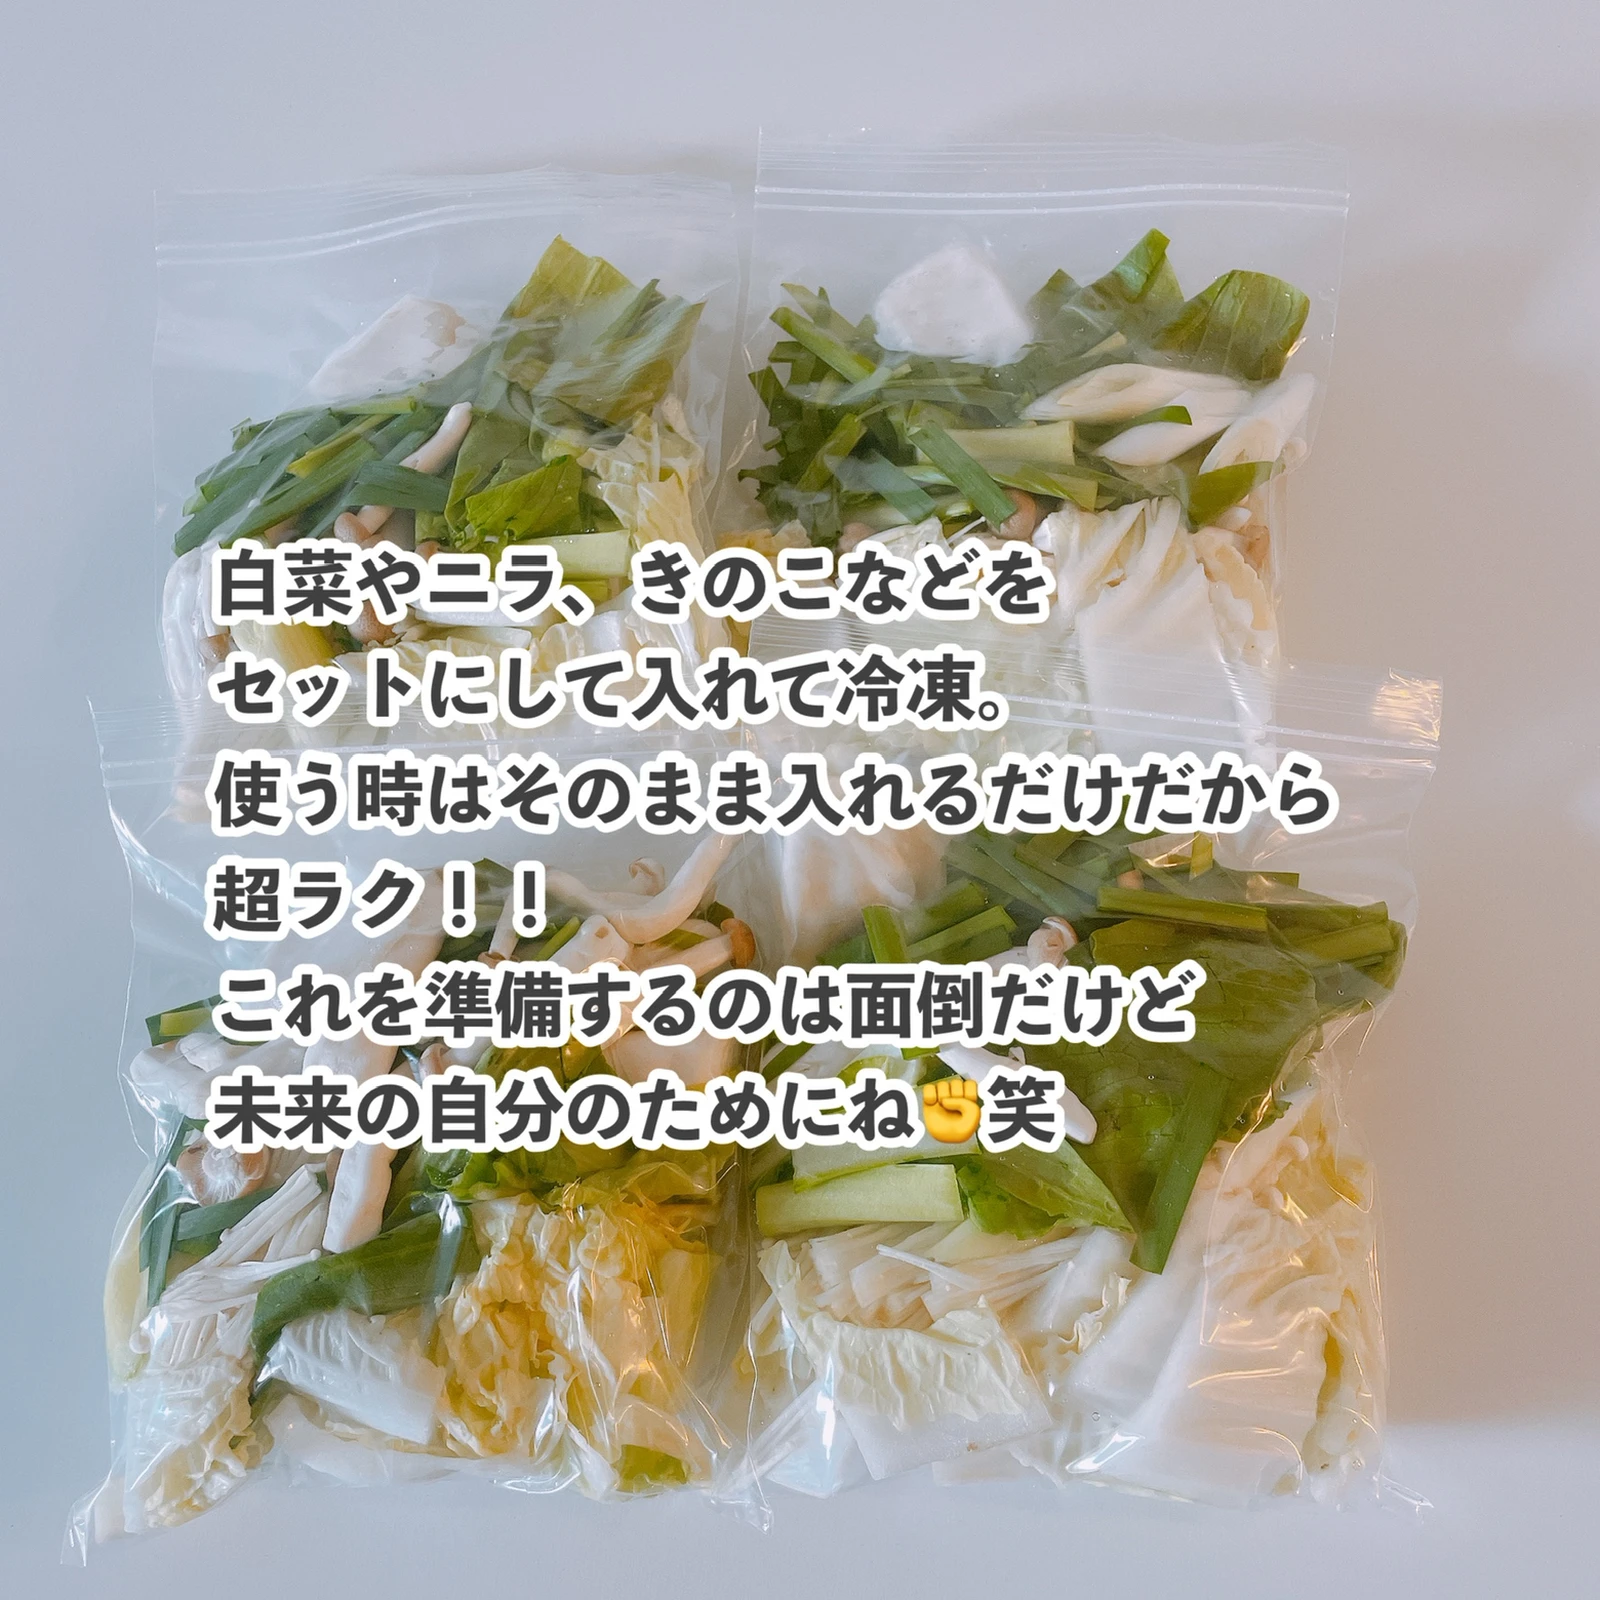 冷凍野菜セットが便利の画像 (4枚目)